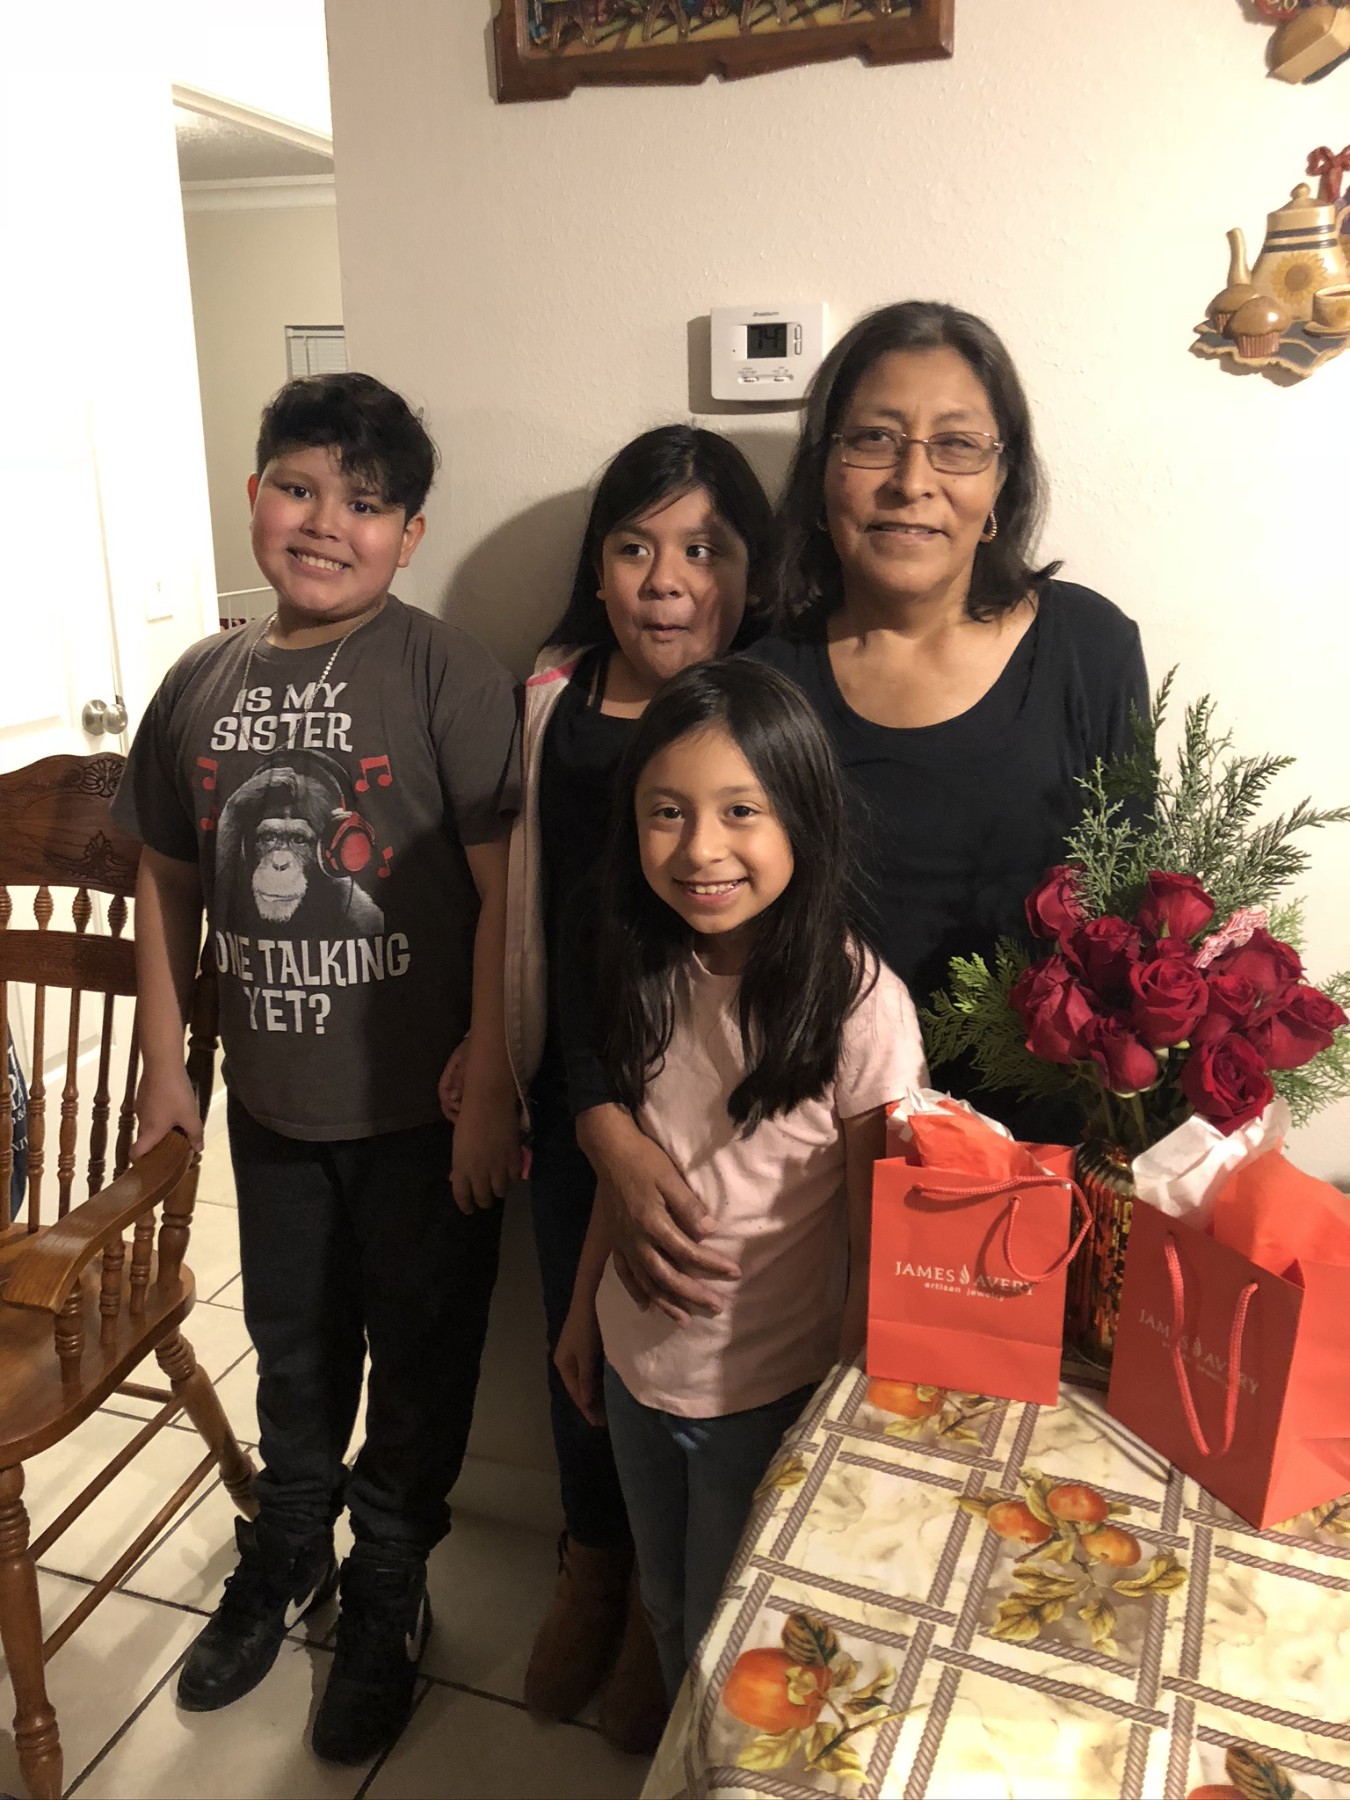 Obituary of Juana Maria Padron - 08/13/2022 - From the Family